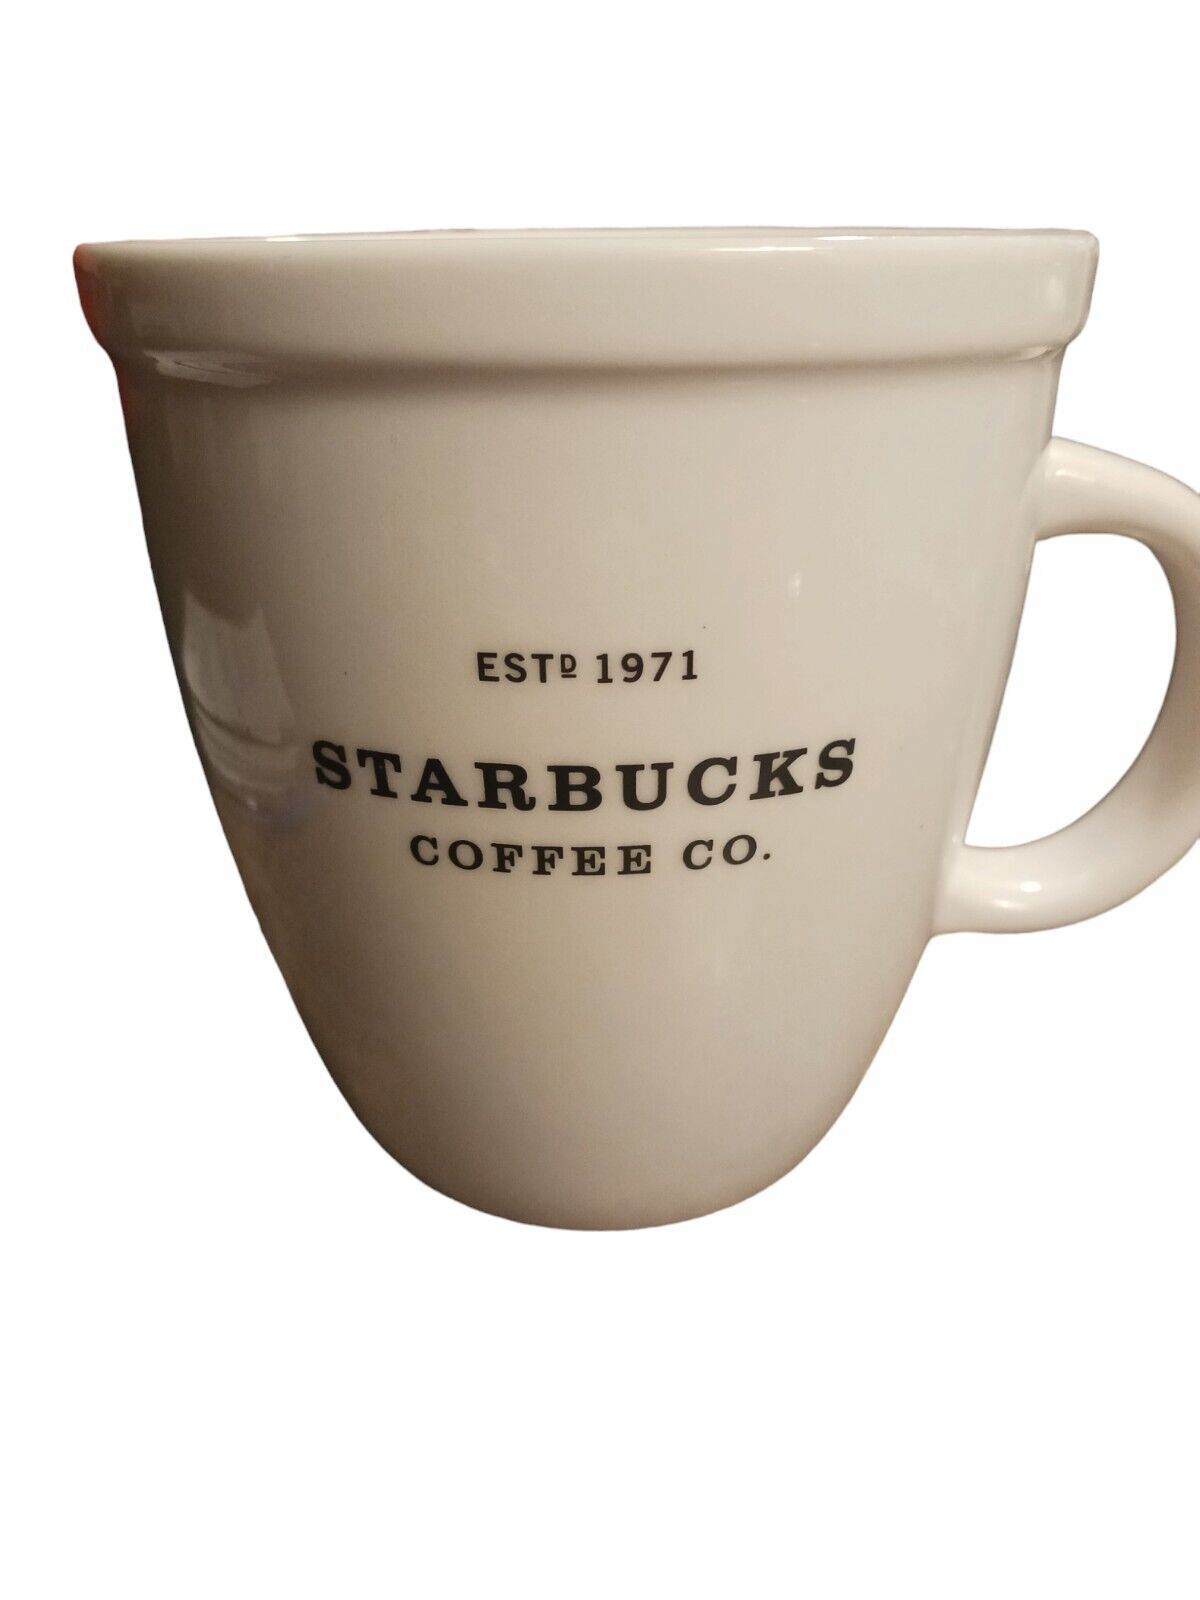 Vintage 2001 Starbucks Coffee Co. Est 1971 Large White Coffee Mug Cup Tea.